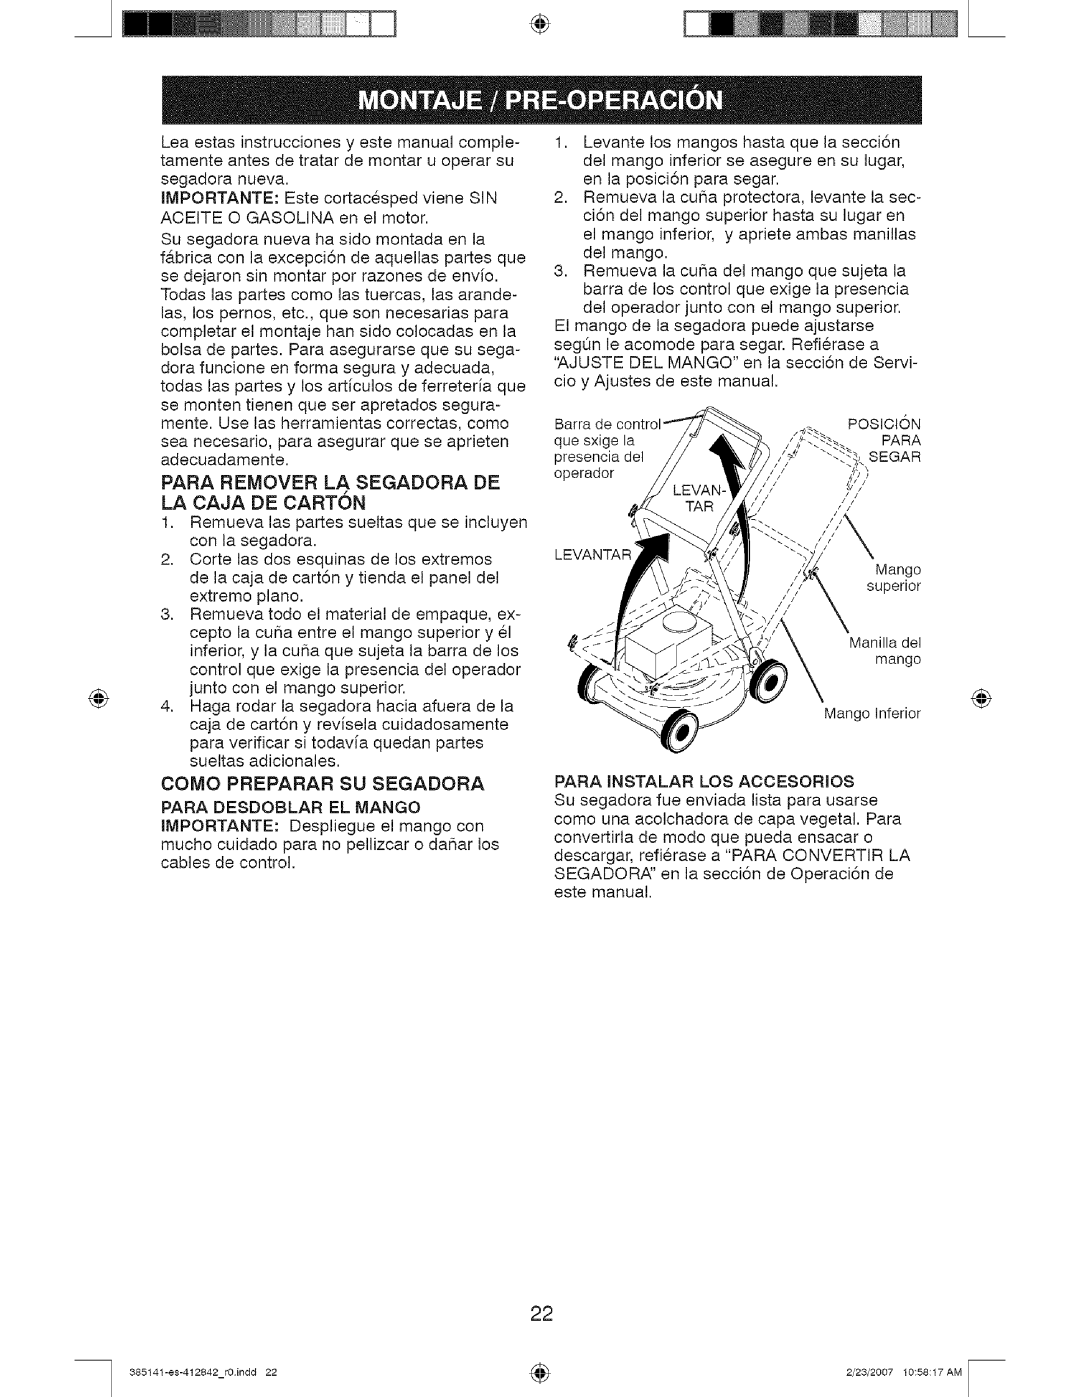 Craftsman 917, 385141 manual Para Remover La Segadora De La Caja De Carton 